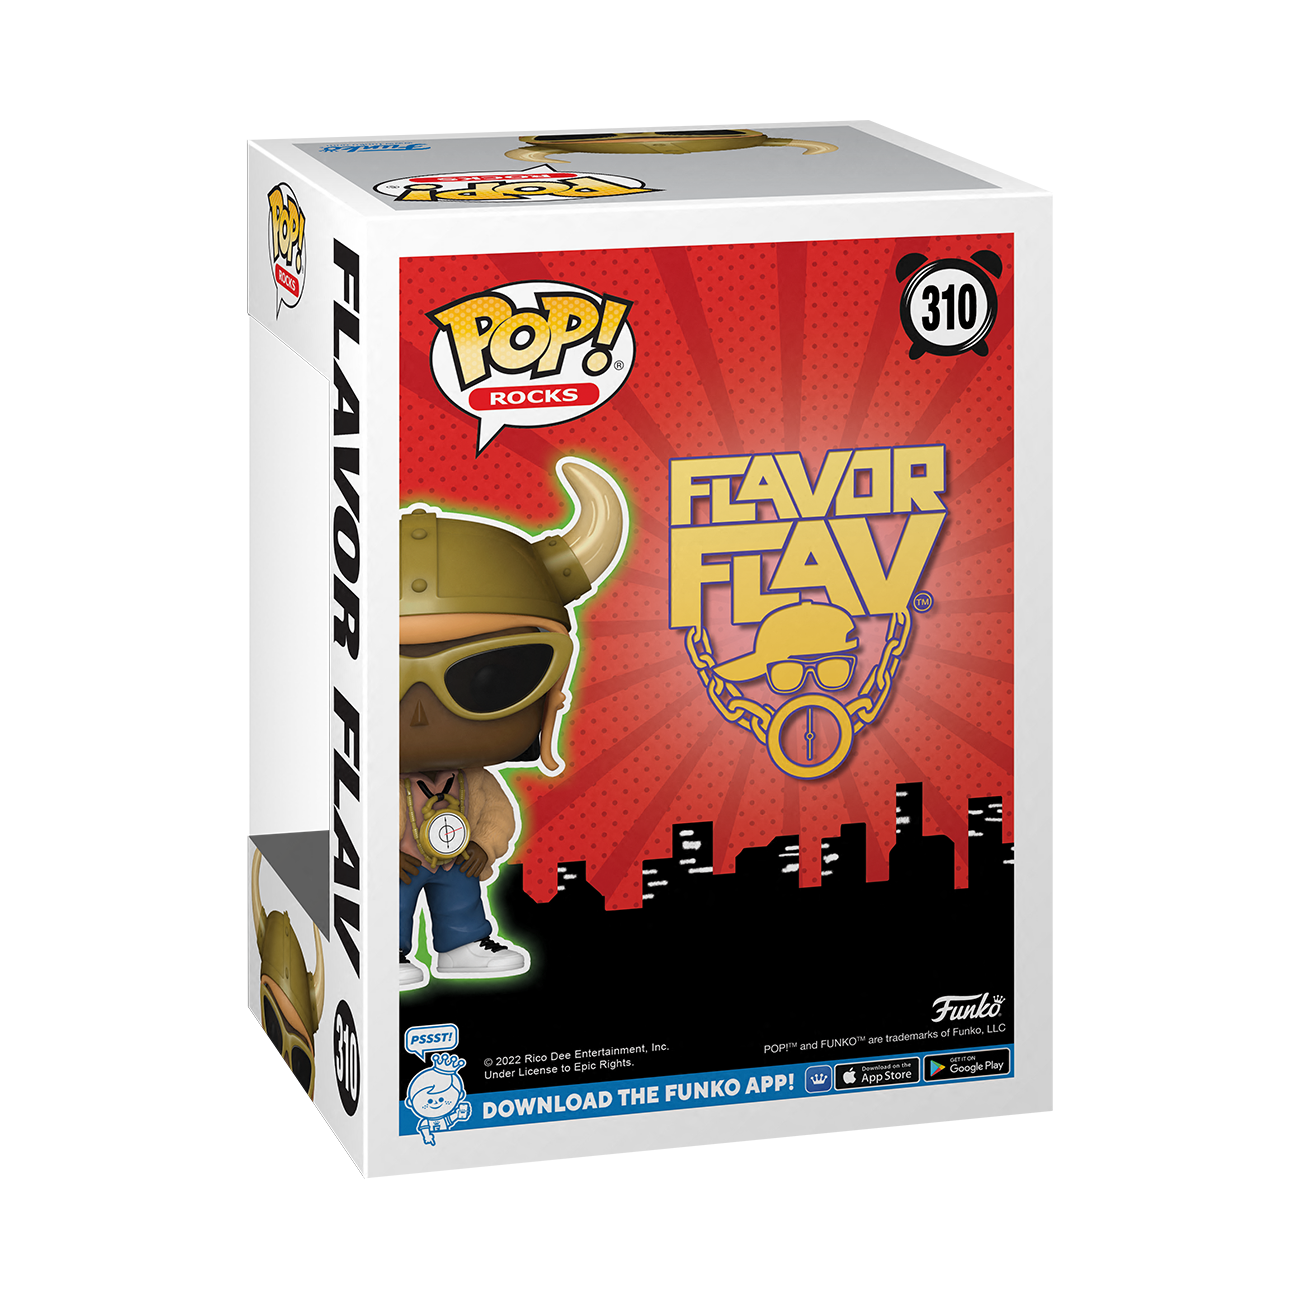 Funko Pop Rocks: Flavor Flav